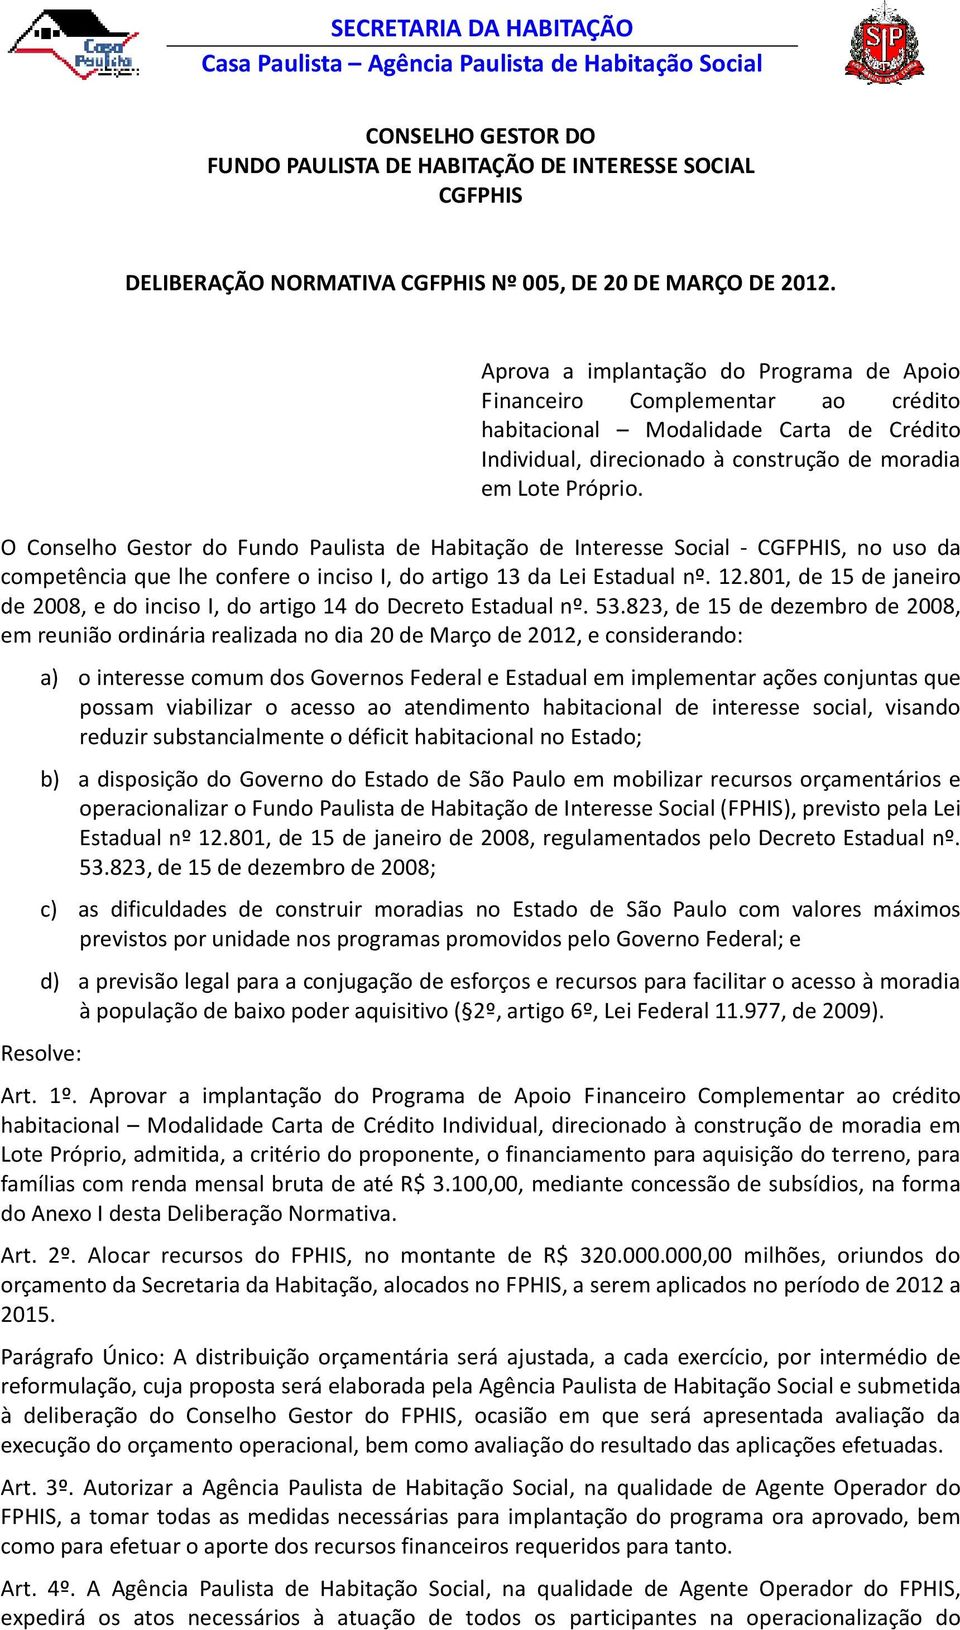 O Conselho Gestor do Fundo Paulista de Habitação de Interesse Social - CGFPHIS, no uso da competência que lhe confere o inciso I, do artigo 13 da Lei Estadual nº. 12.